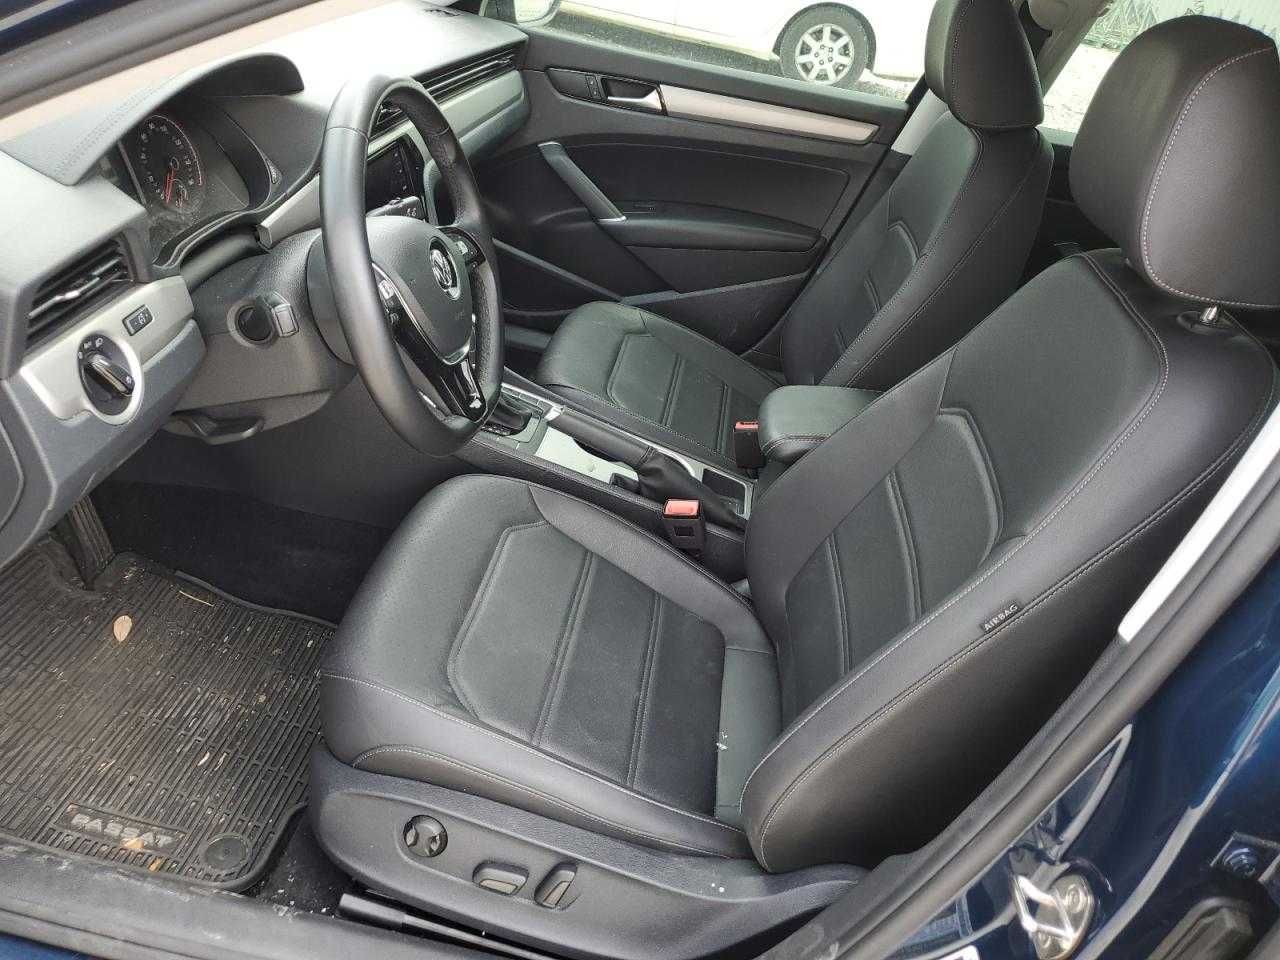 Volkswagen Passat SE 2020